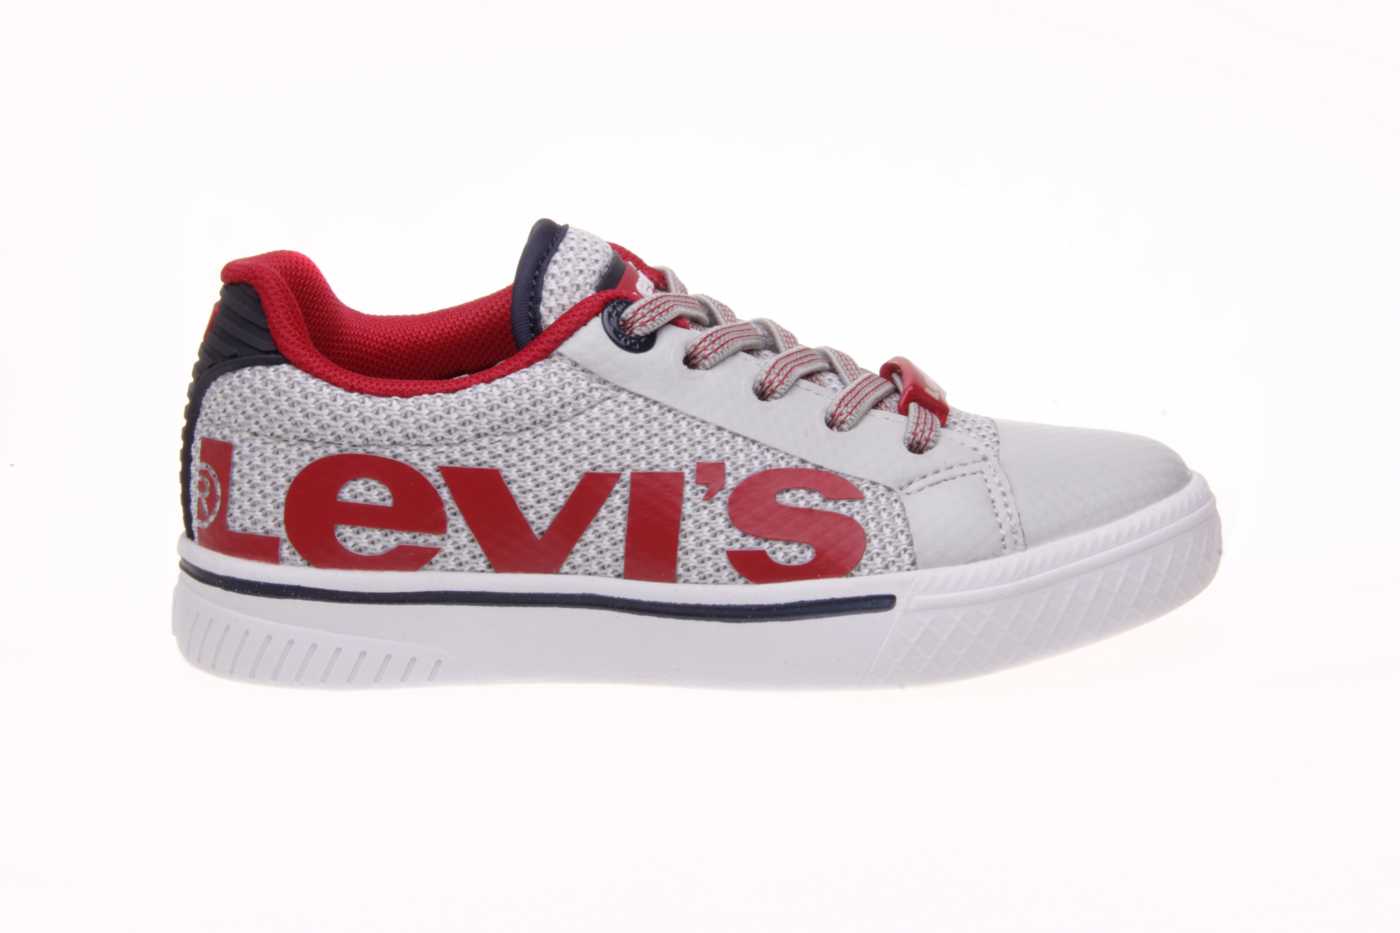 Comprar zapato LEVIS para JOVEN NIÑO estilo DEPORTIVO color BLANCO SINTETICO